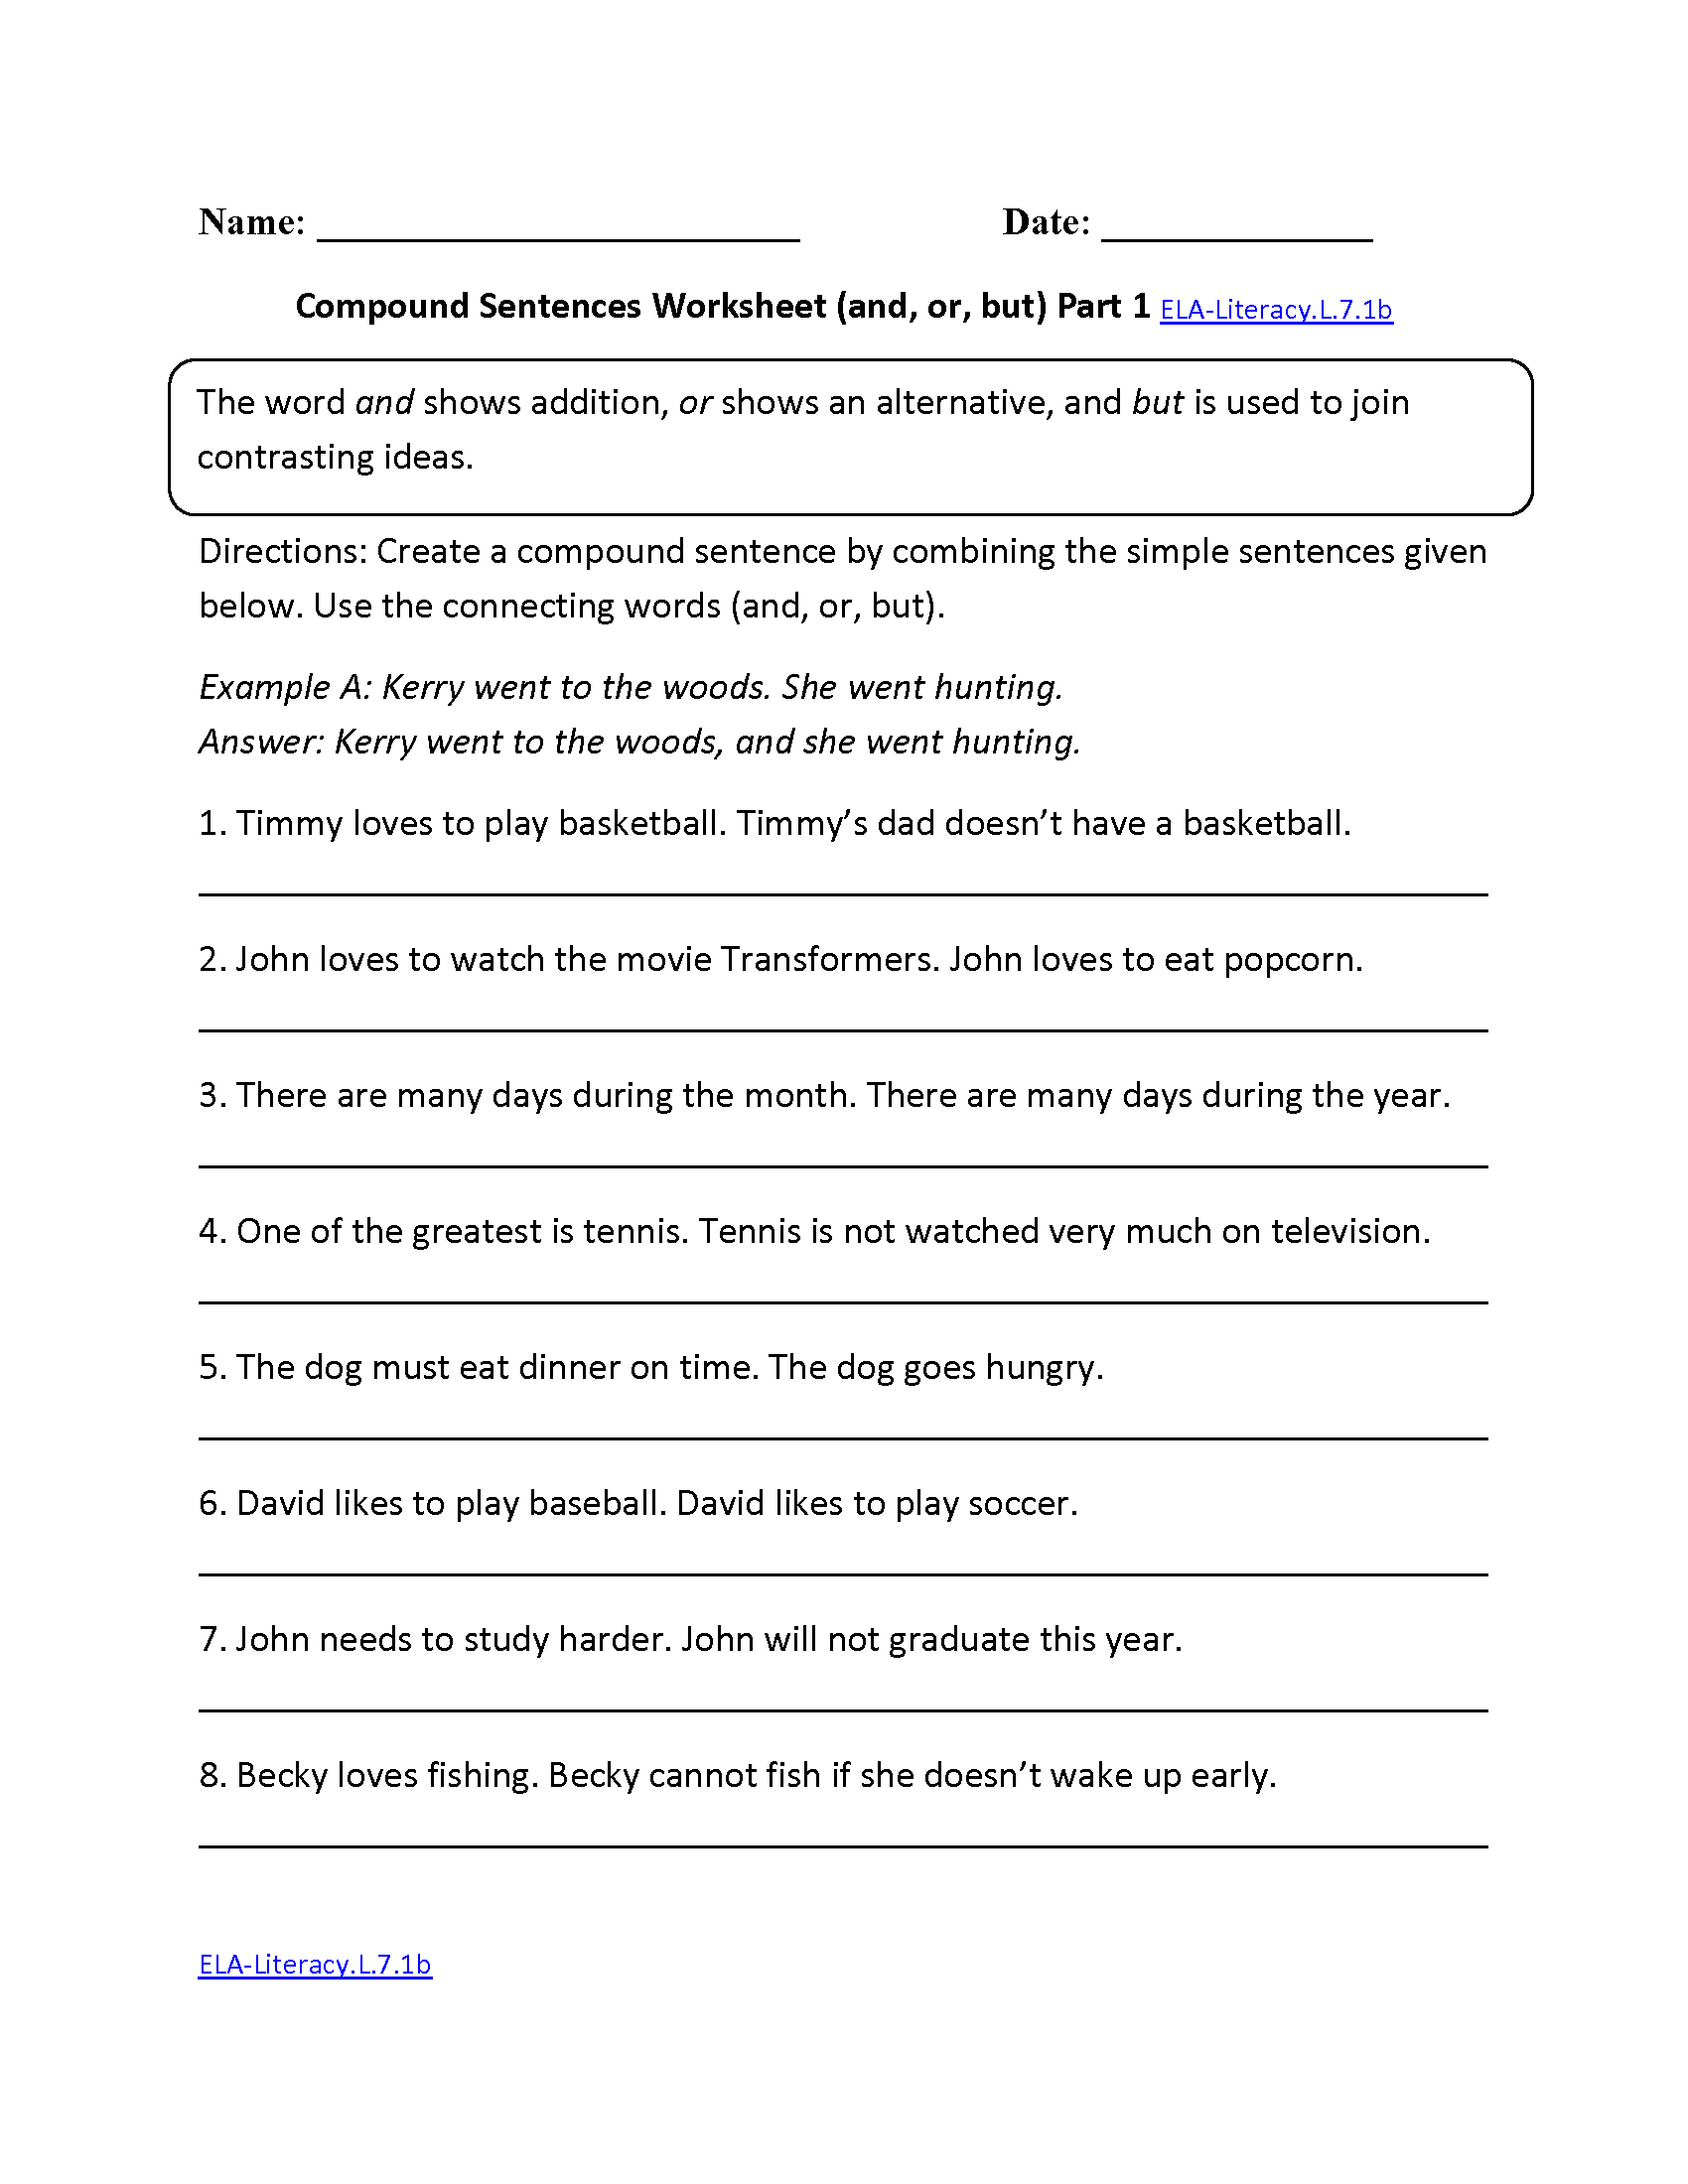 Compound Sentences Worksheet ELA-Literacy.L.7.1b Language Worksheet